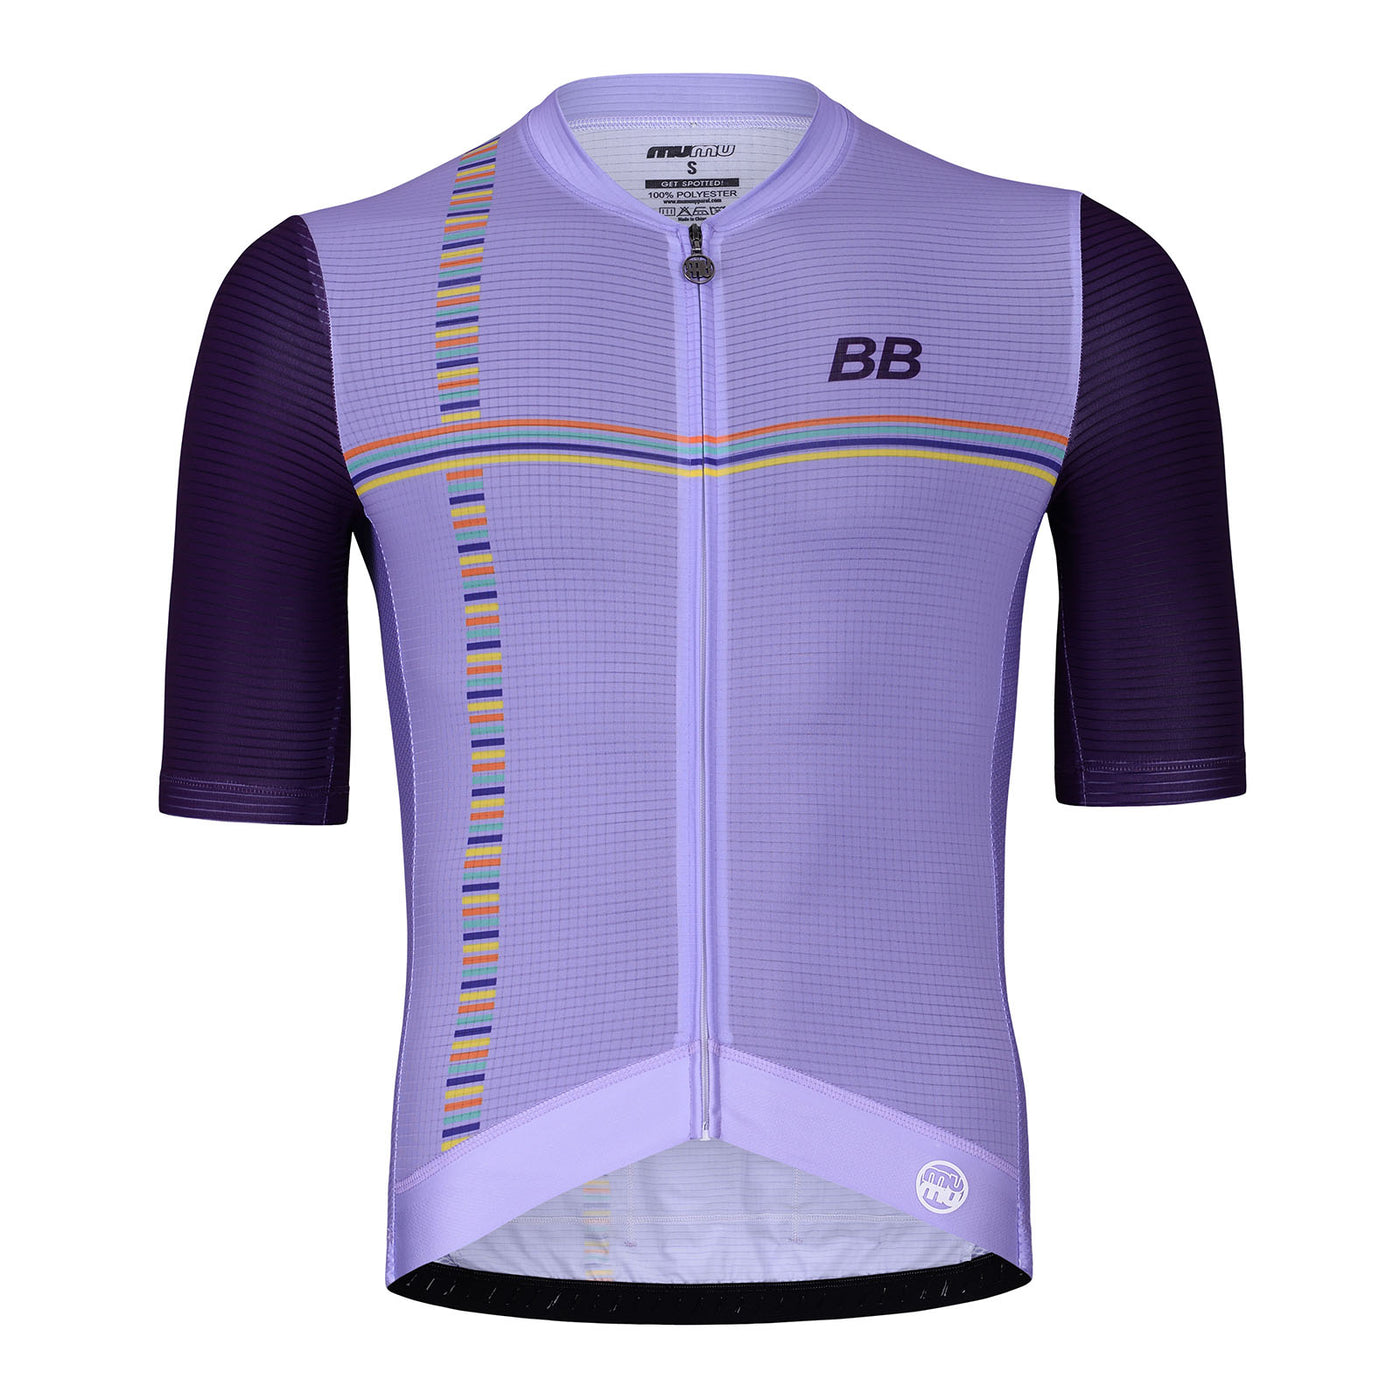 BB Elite Lightweight Jersey - Lavender